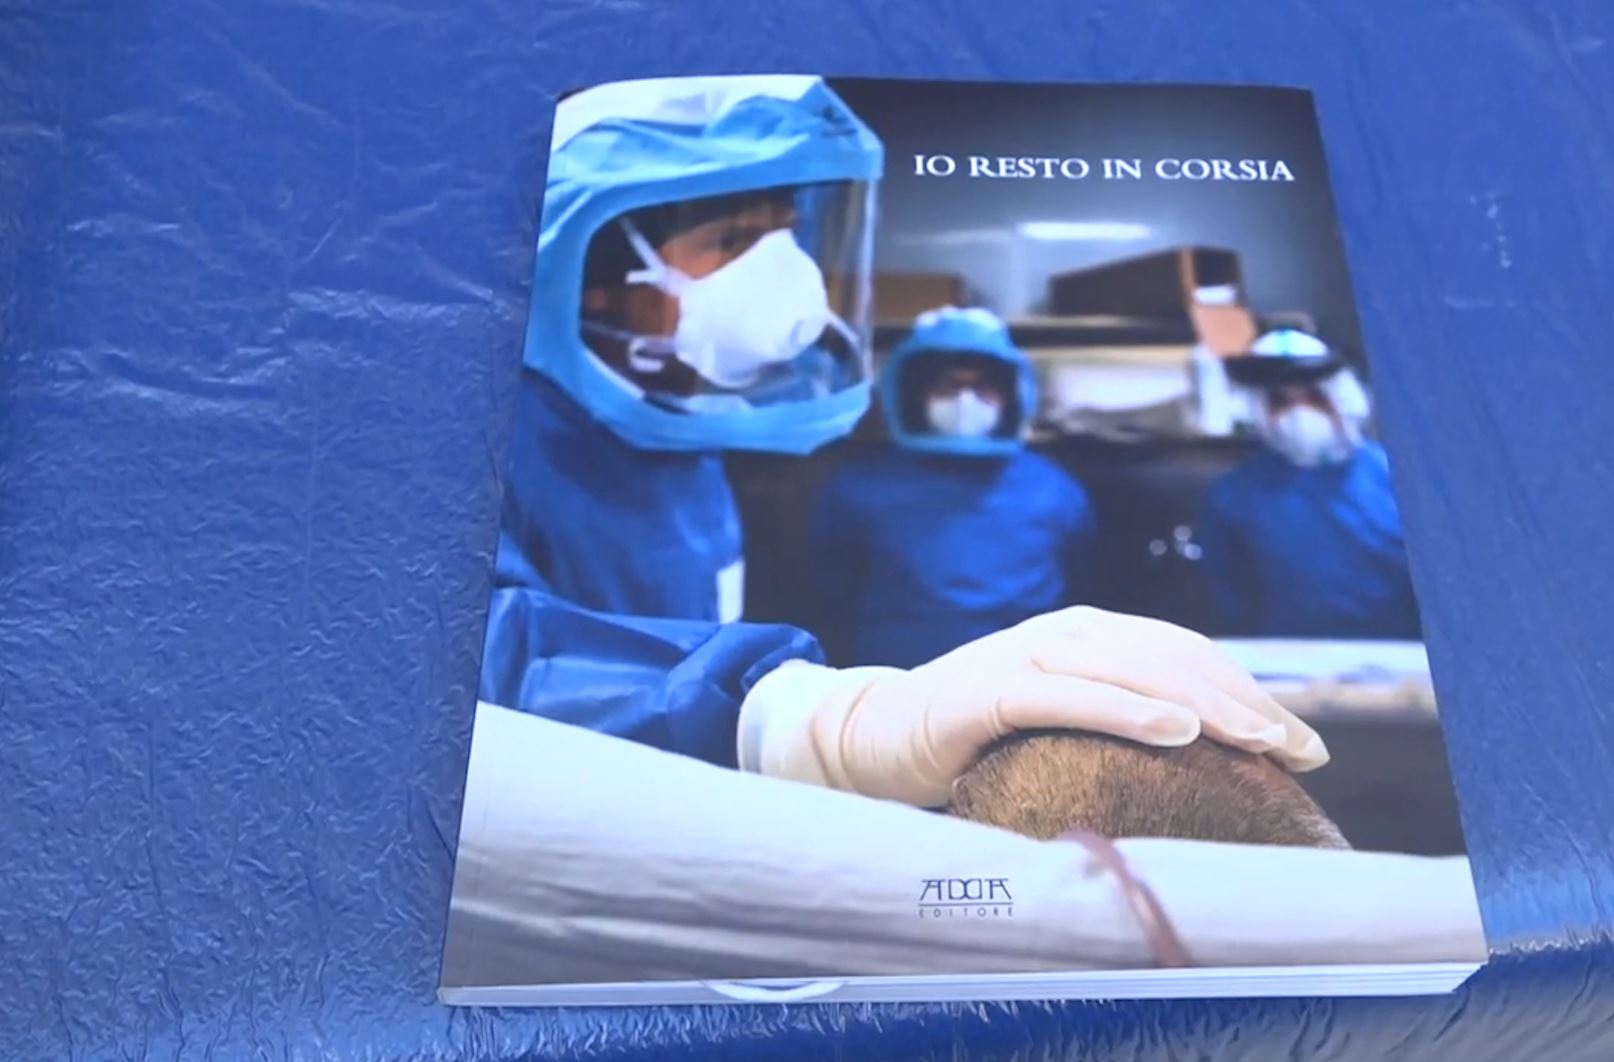 “Unë qëndroj në repart”: Hashtagu i mjekëve gjatë urgjencës së Covid-19 bëhet një libër në Bari